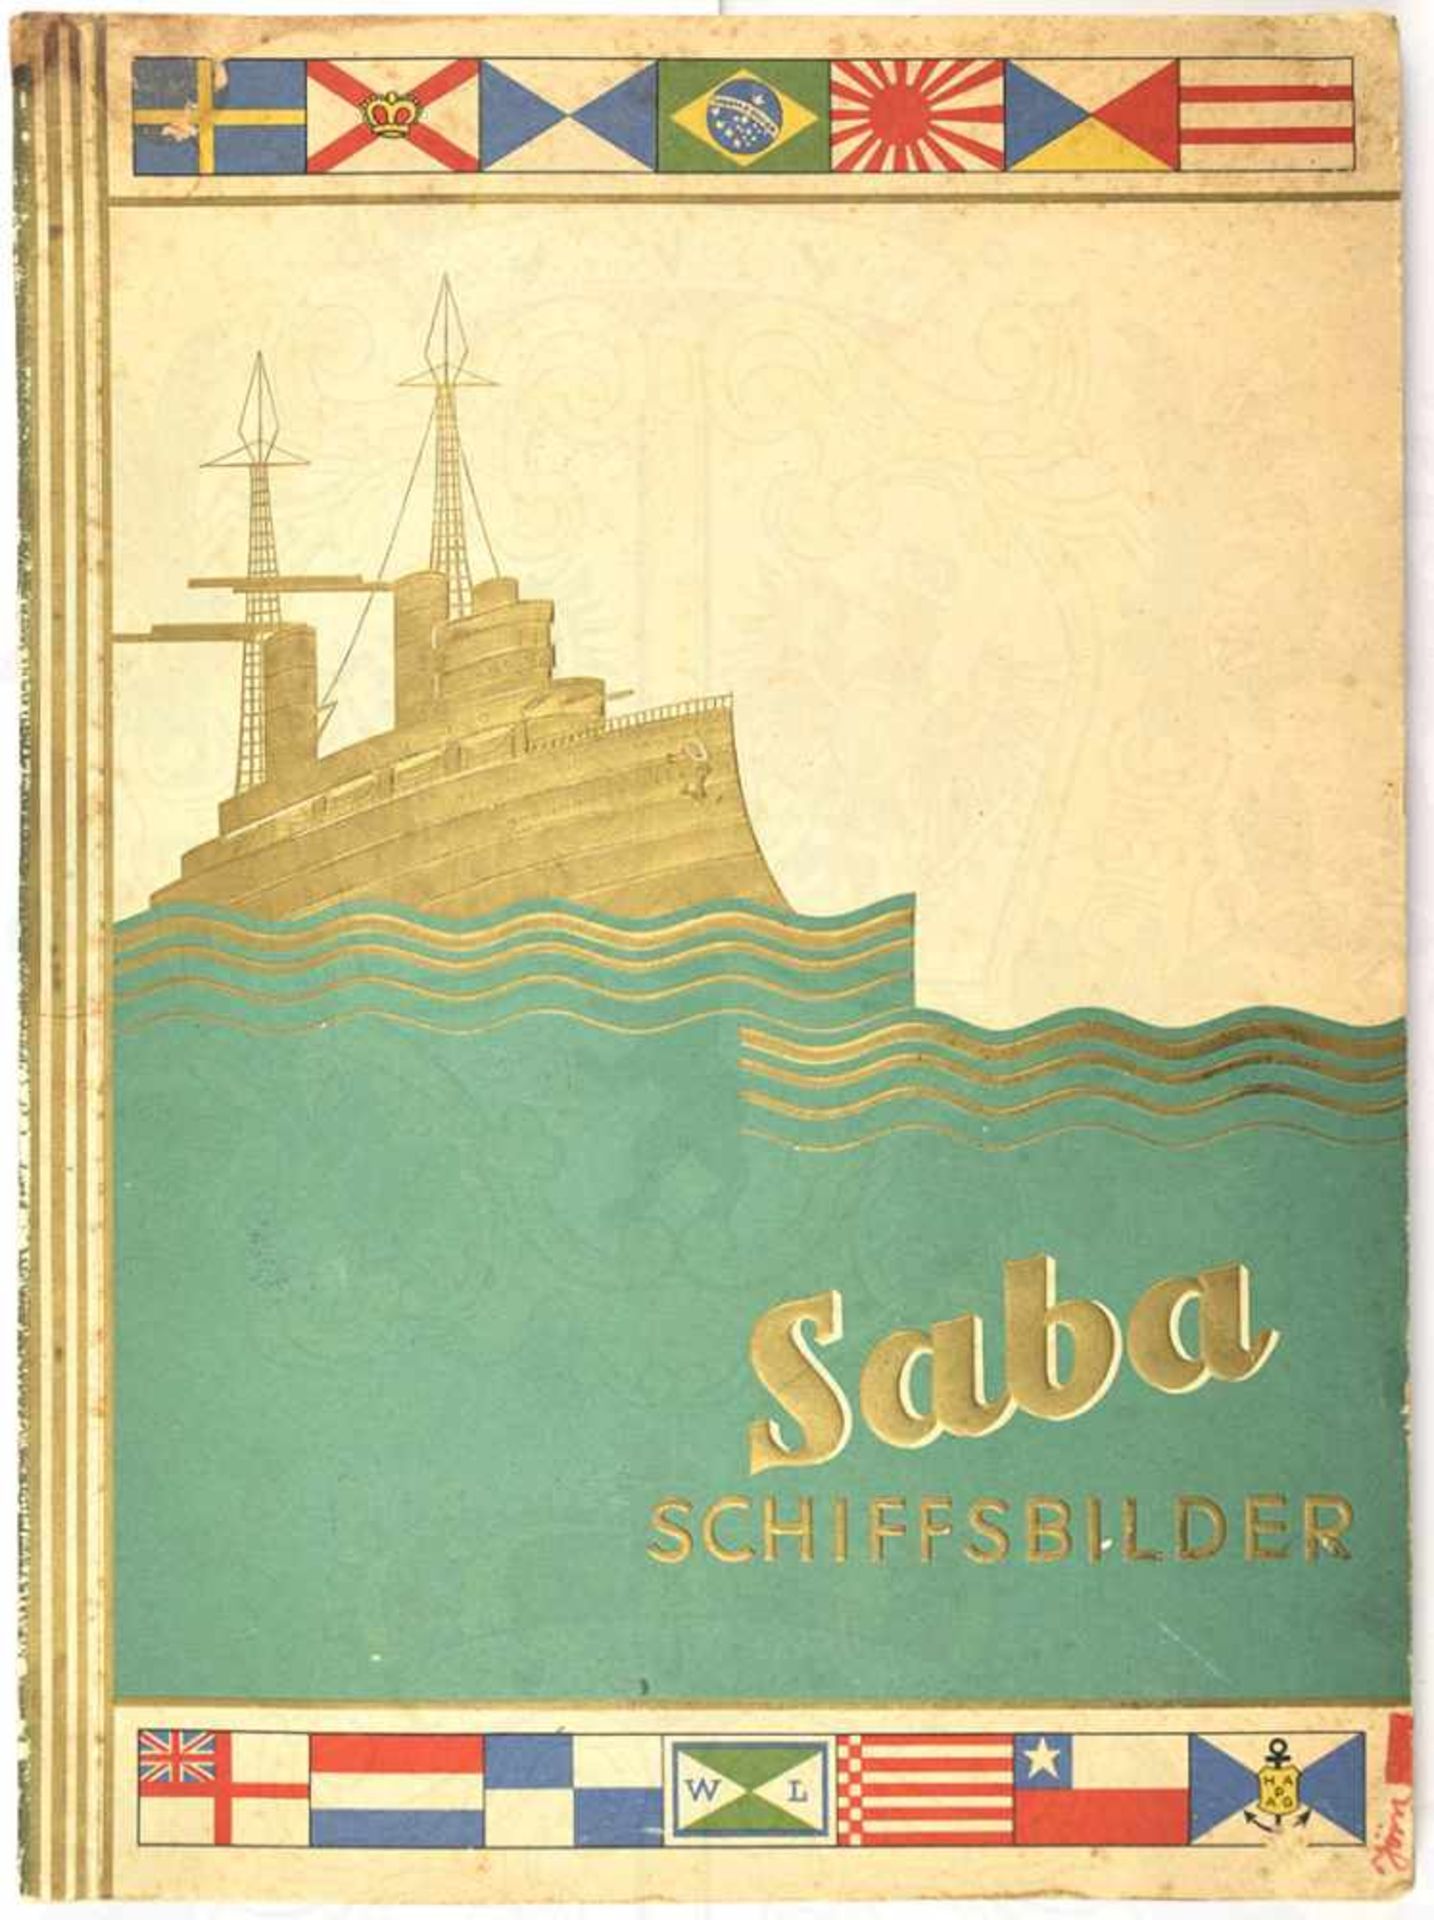 SABA SCHIFFSBILDER (Folge I), Garbaty Zig.-Fabrik, Berlin 1933, 251 von 252 Bildern (Nr. 2 fehlt),